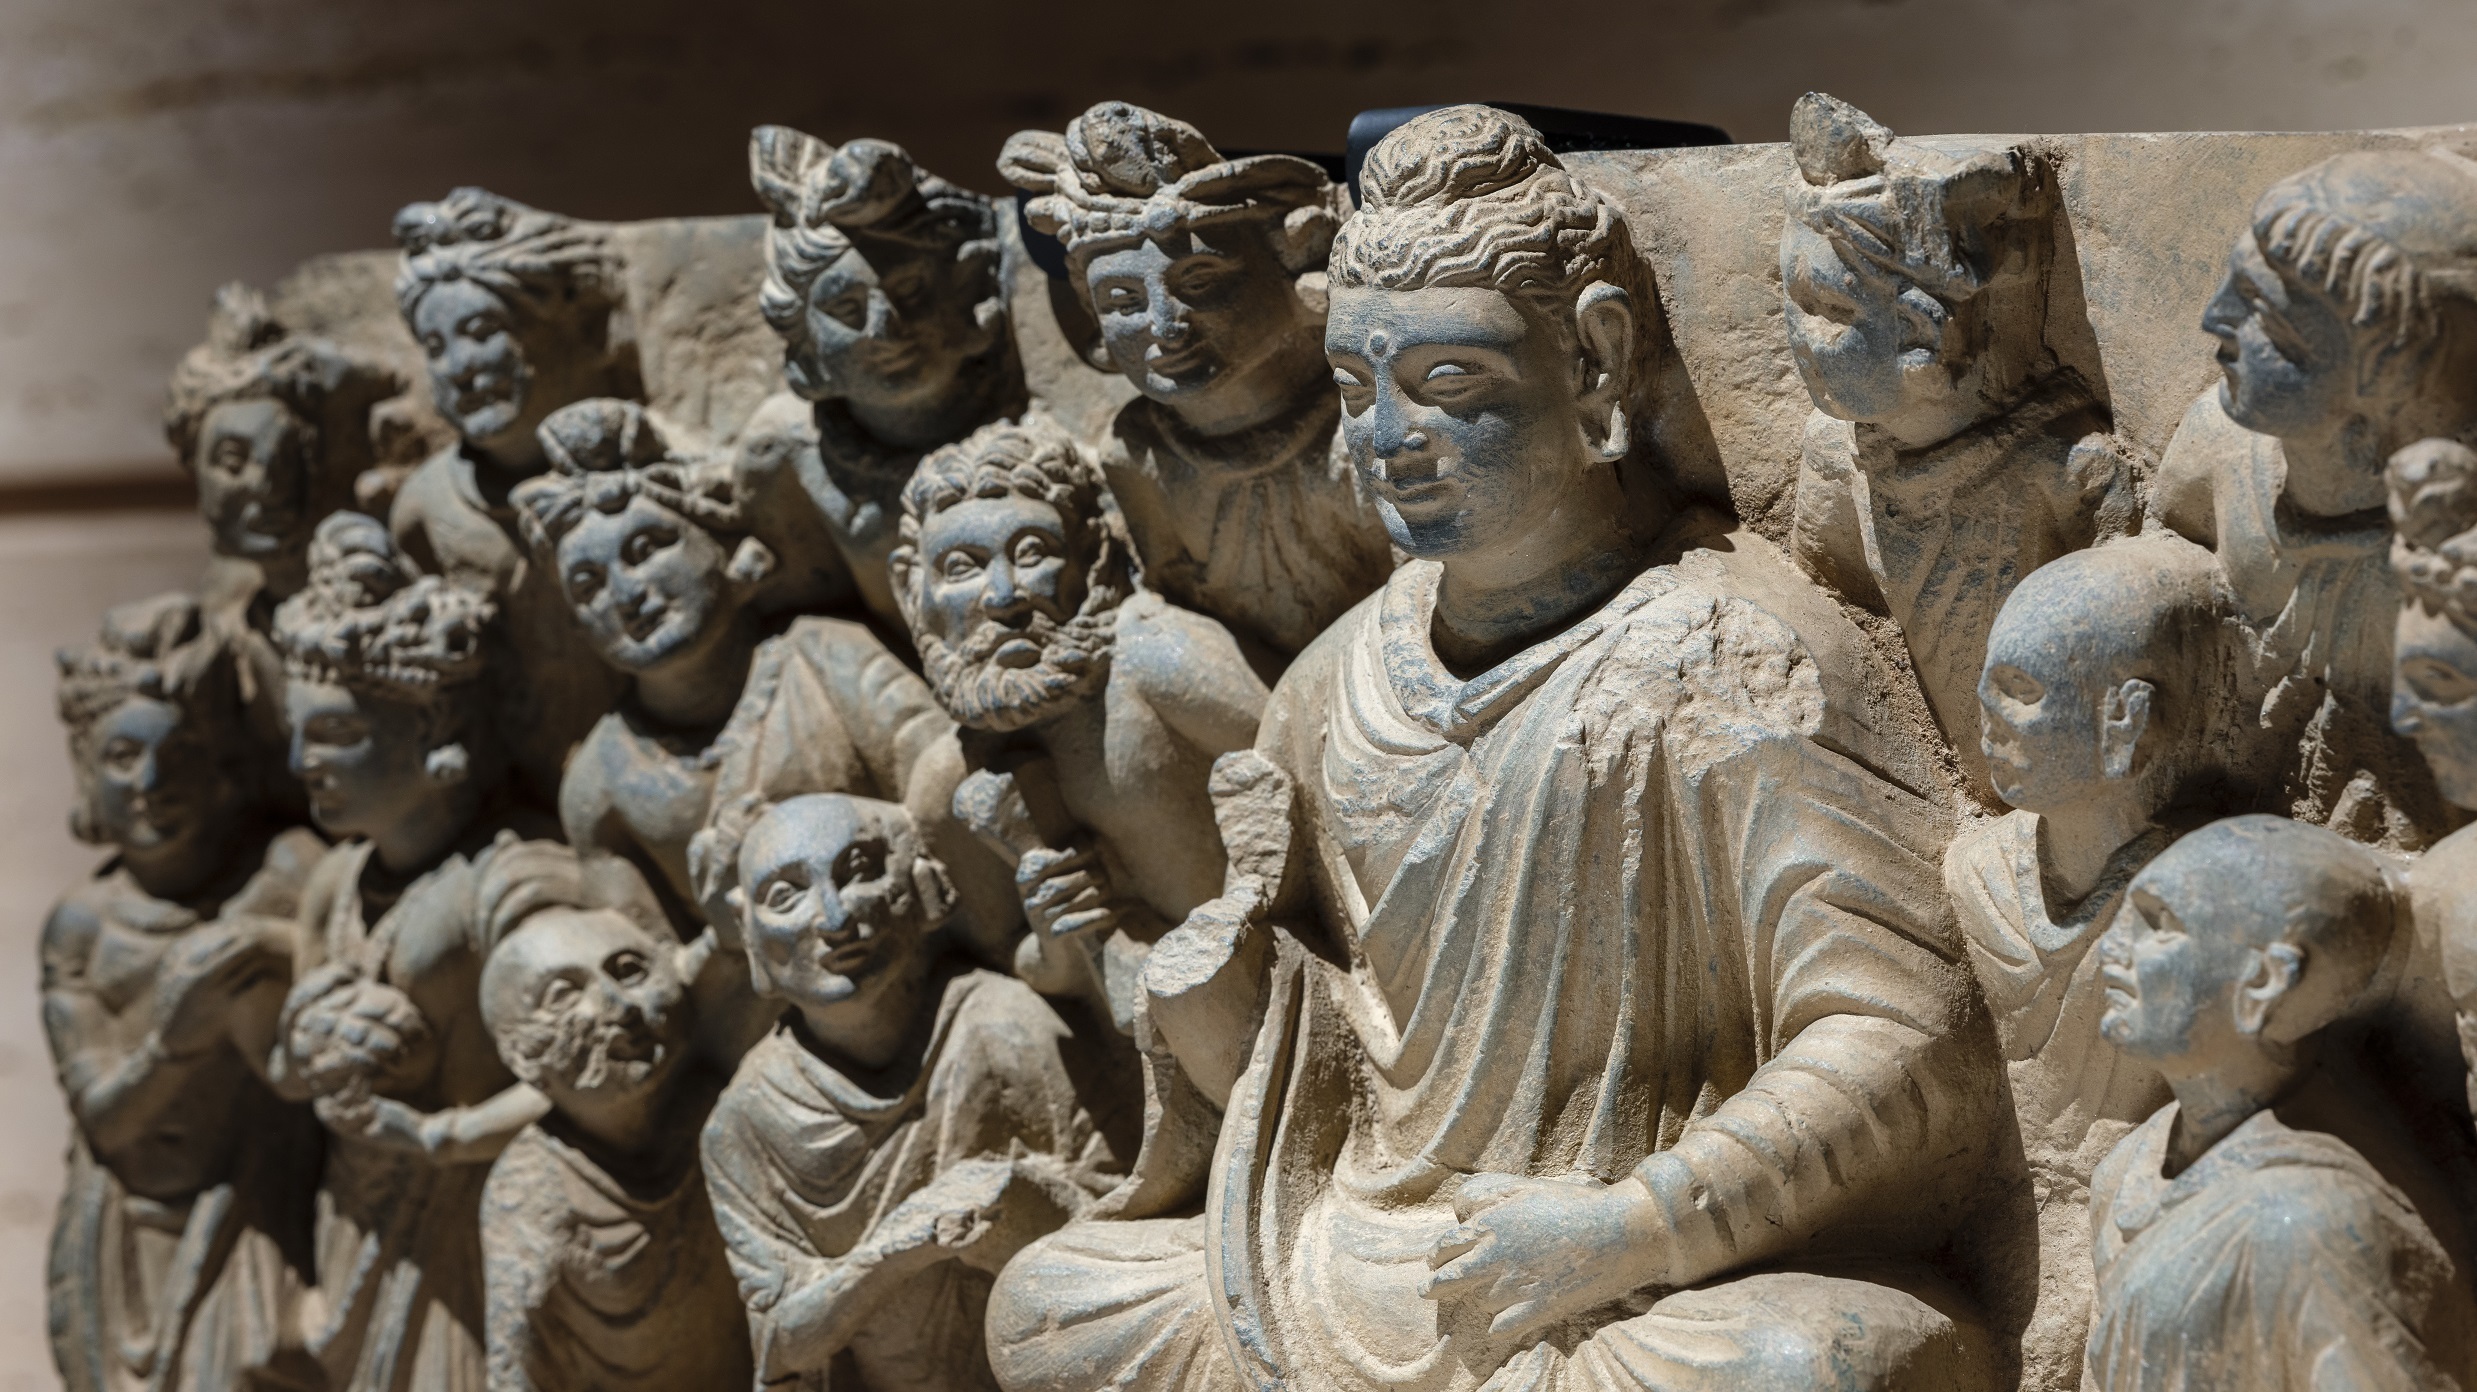 第9期特集展示ガンダーラの仏像と仏伝浮彫を月より開催